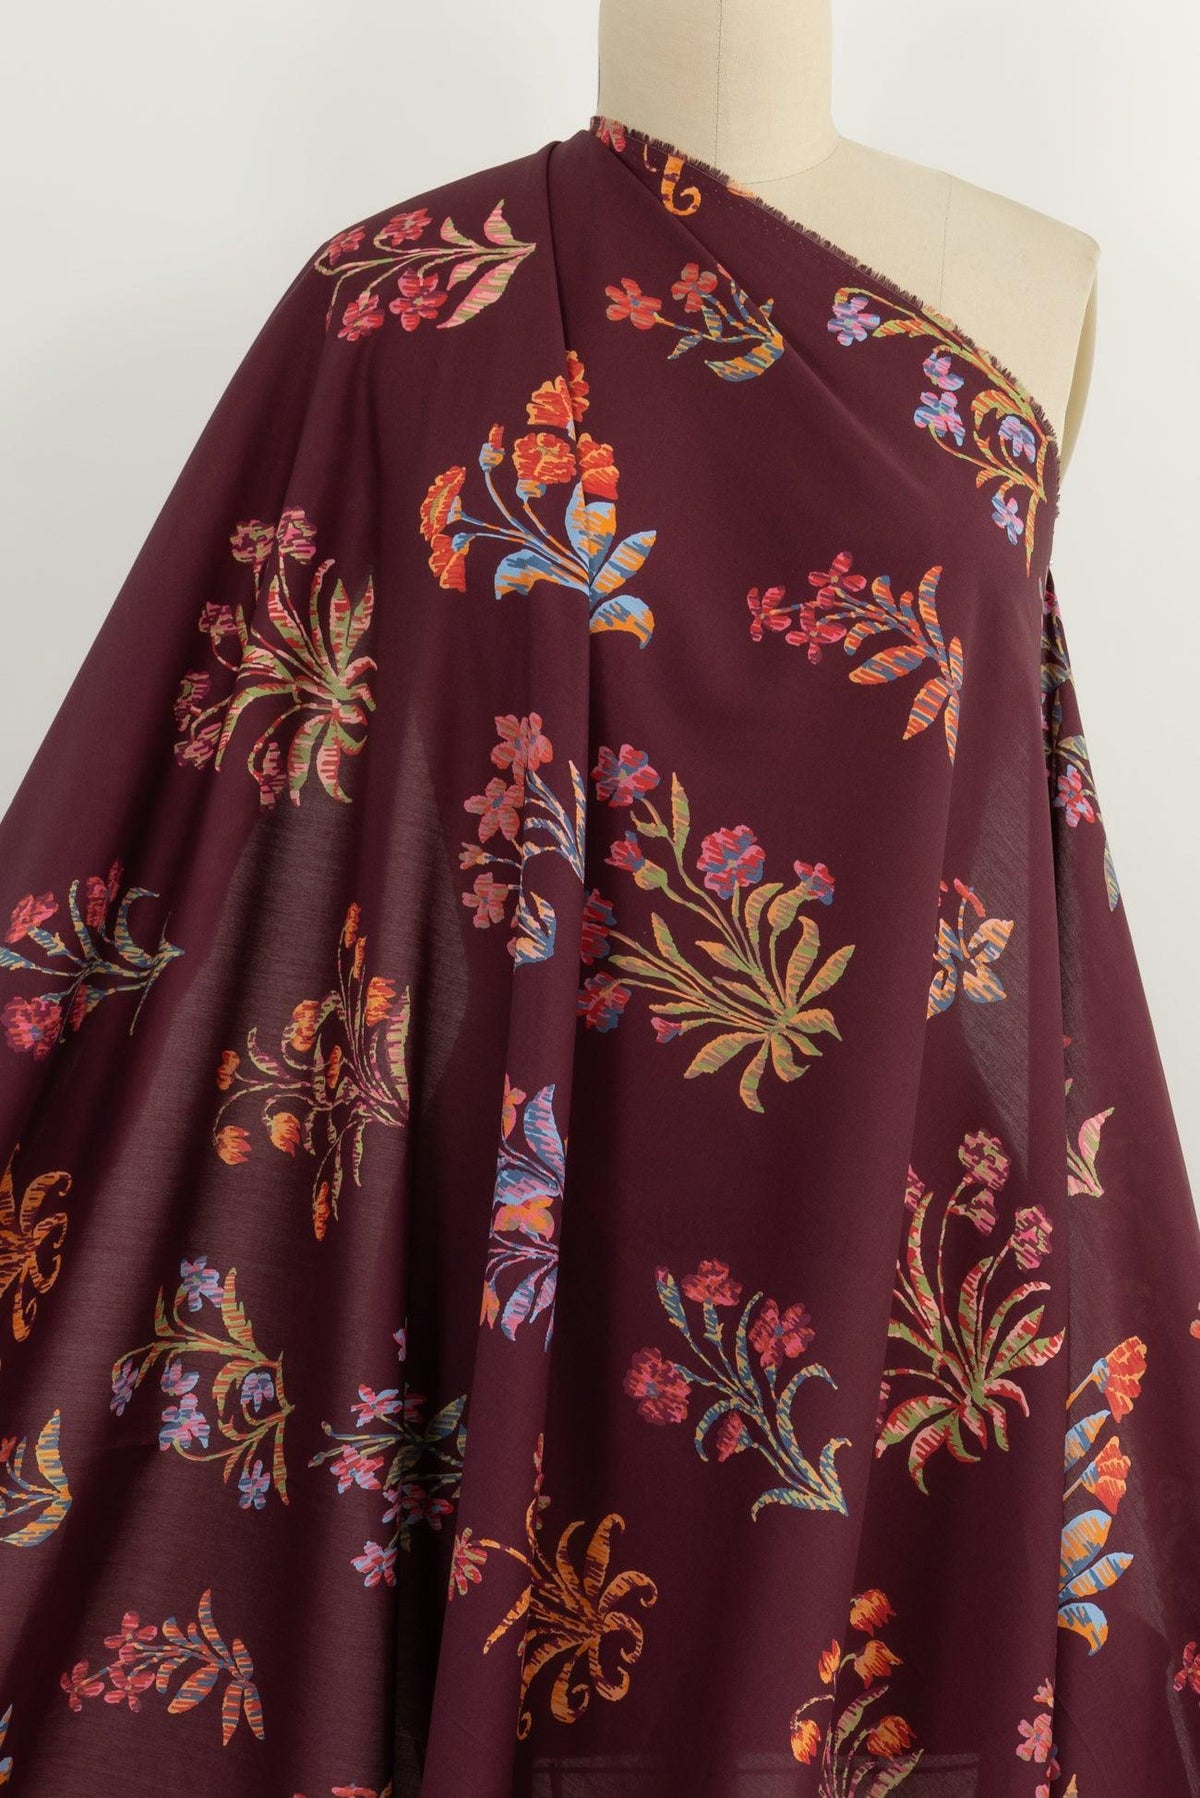 Nosegay Liberty Cotton Woven - Marcy Tilton Fabrics